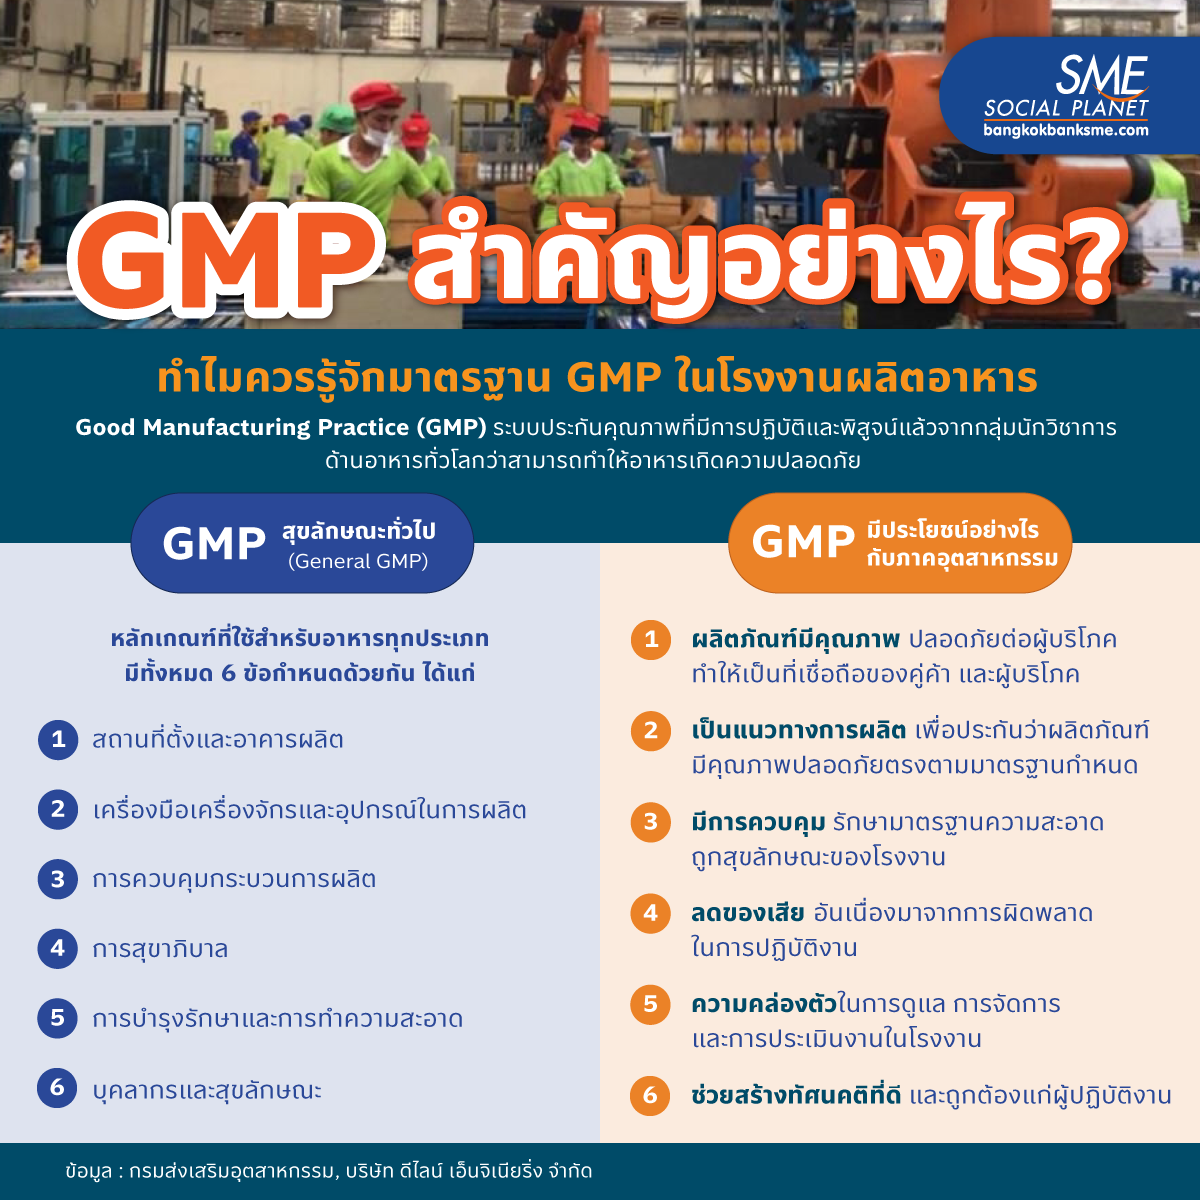 GMP สำคัญอย่างไร?